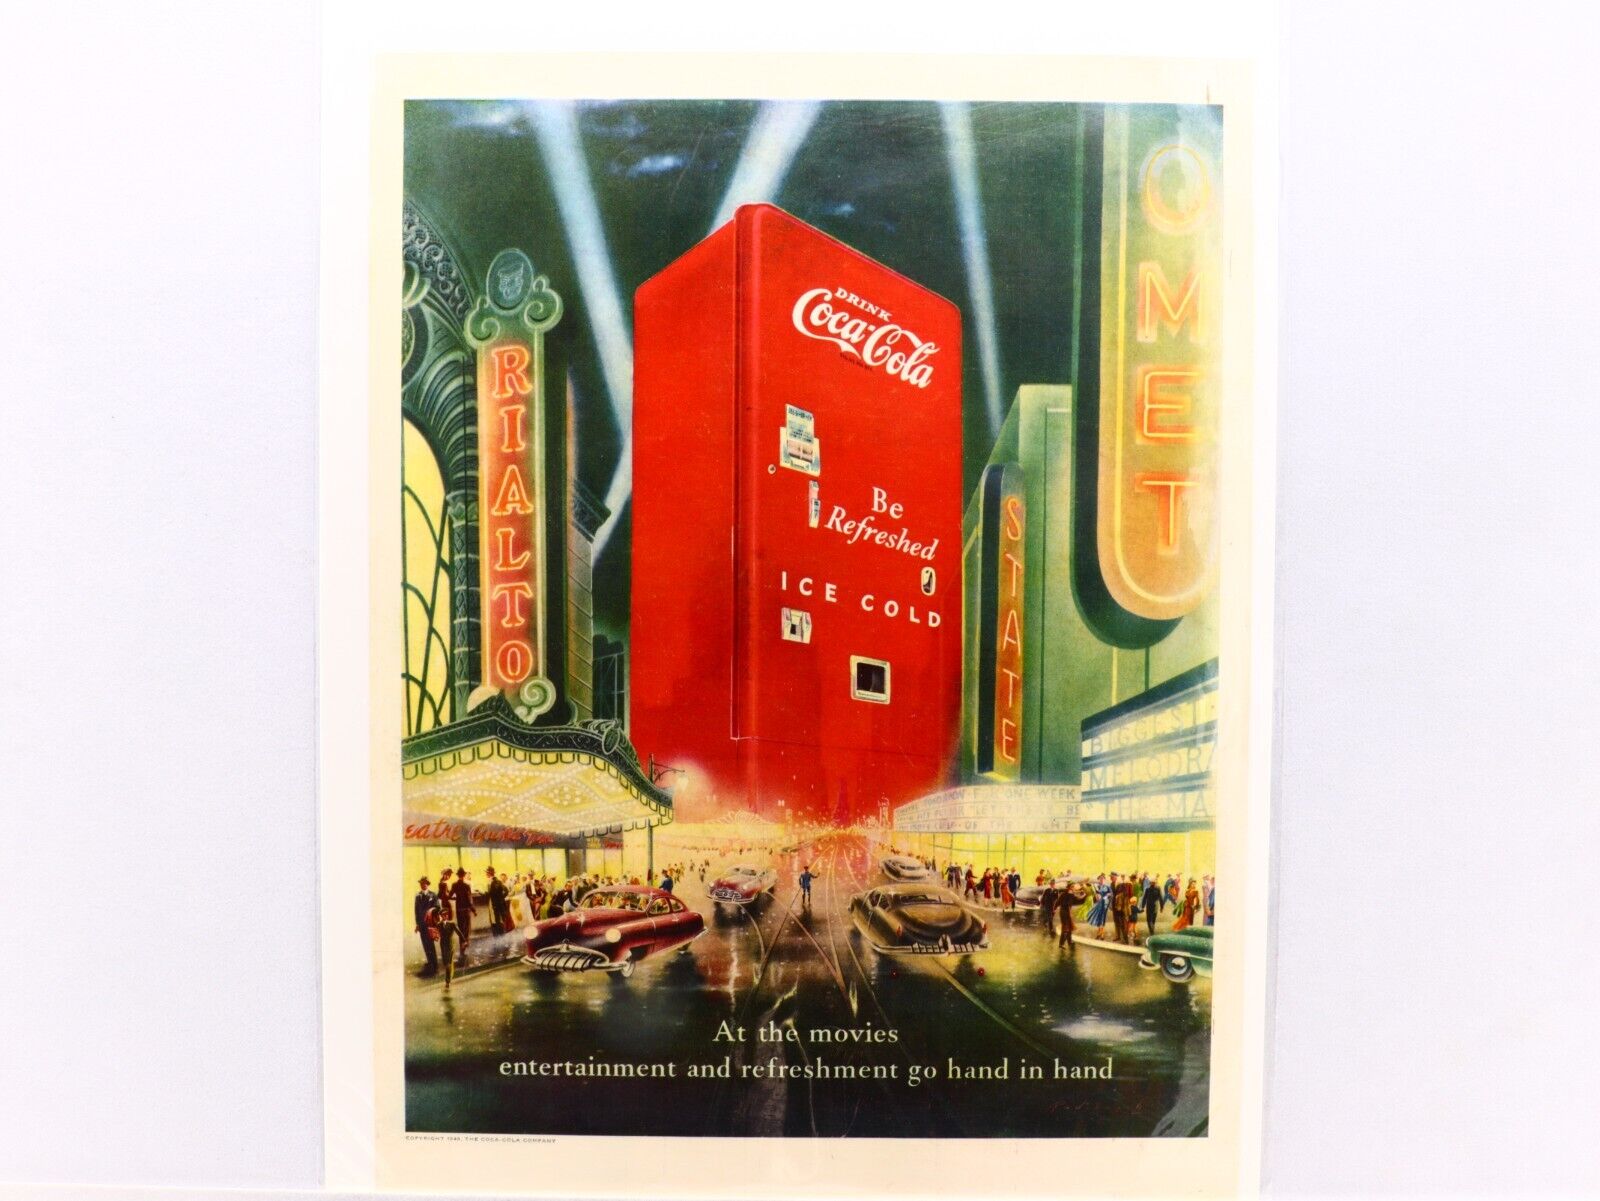 1949 Coca-Cola Ad, Iconic Coke Machine And A Futuristic Cosmopolitan City View.